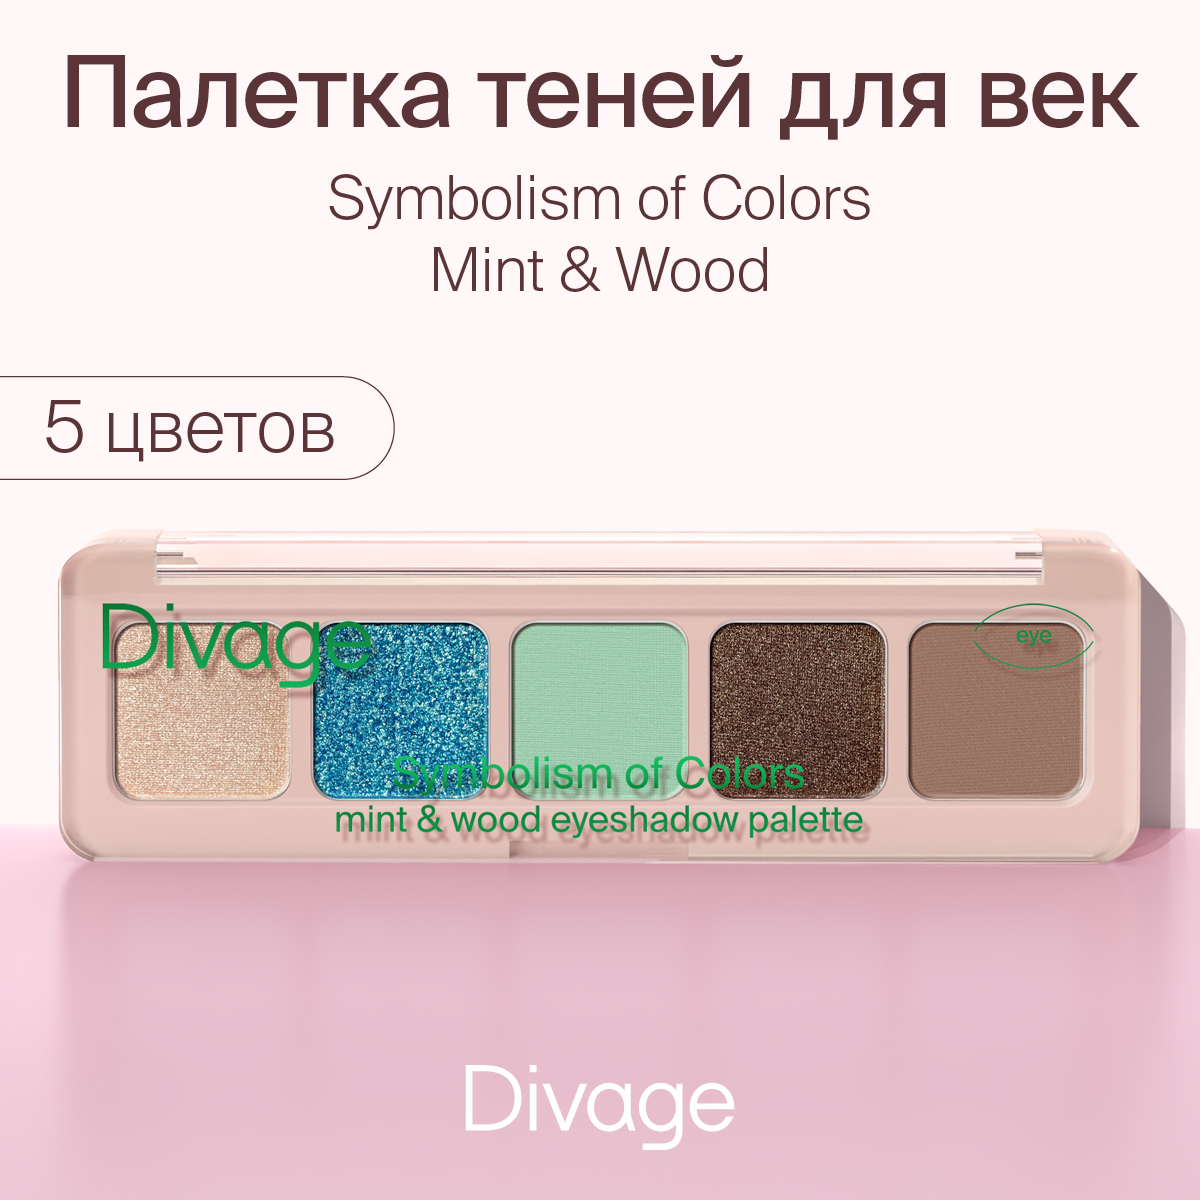 Палетка теней для век Divage Symbolism of Colors Mint&Wood